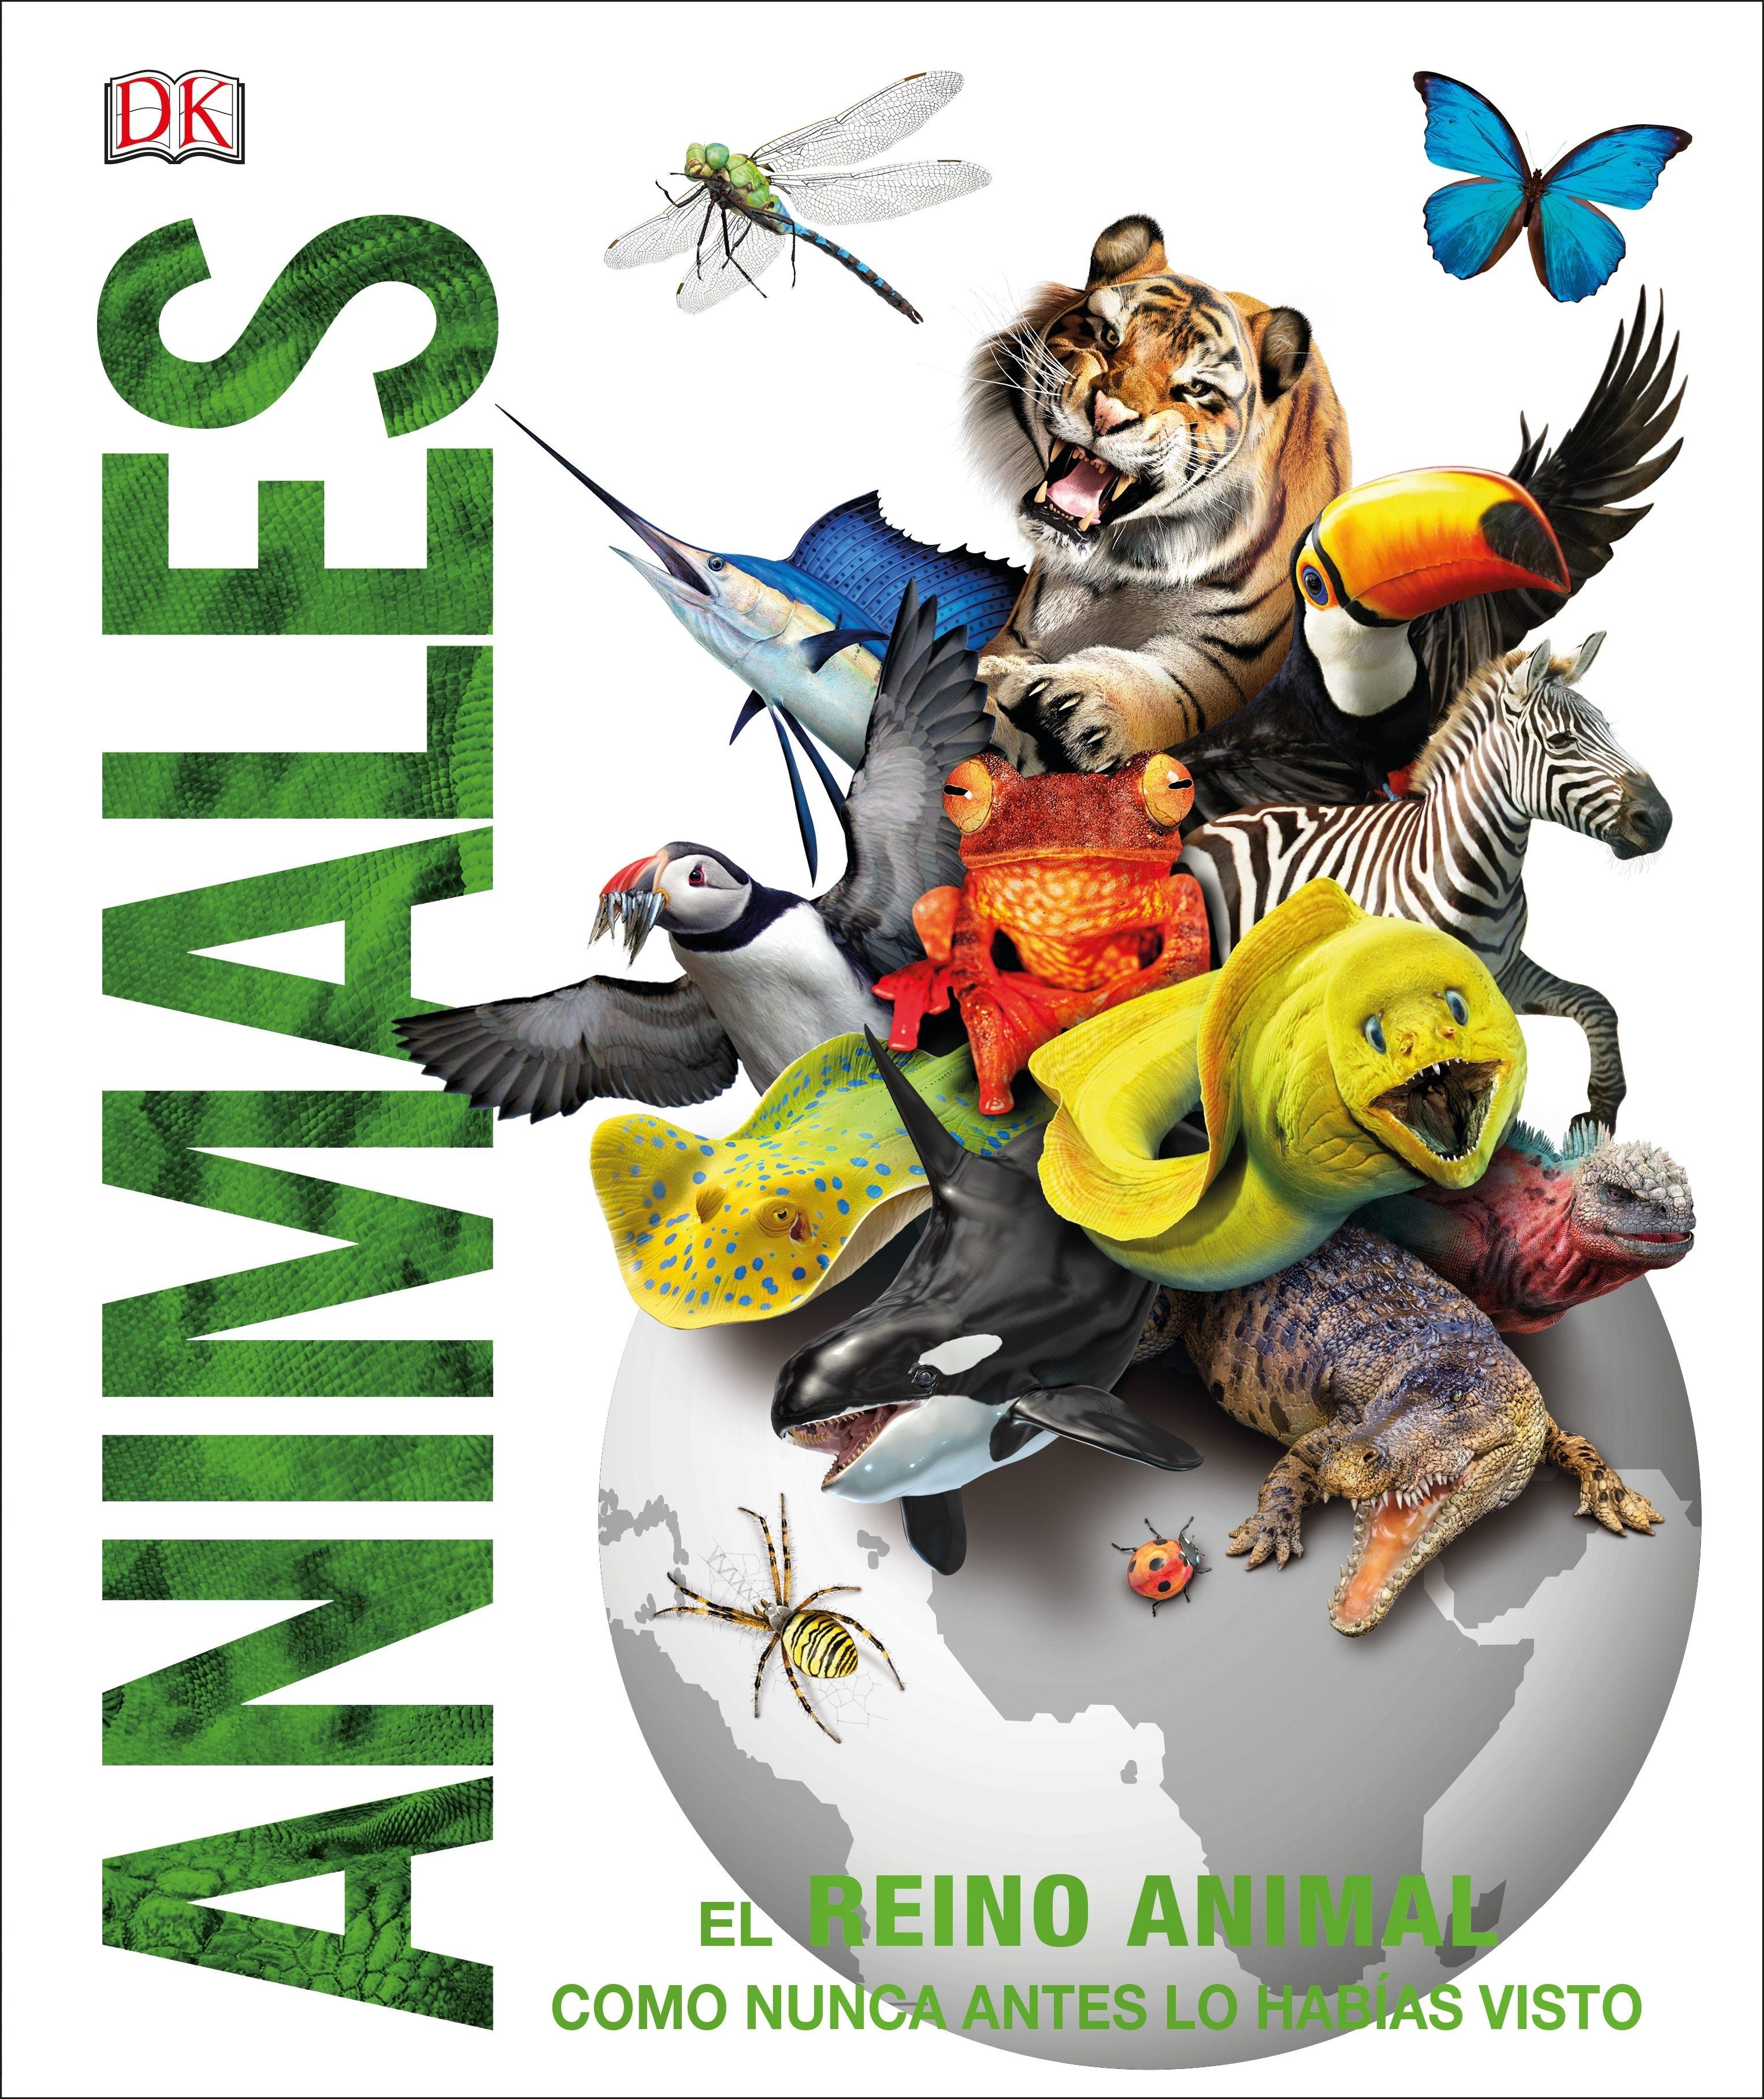 Animales "El reino animal como nunca antes lo habías visto con increíbles ilustrac"